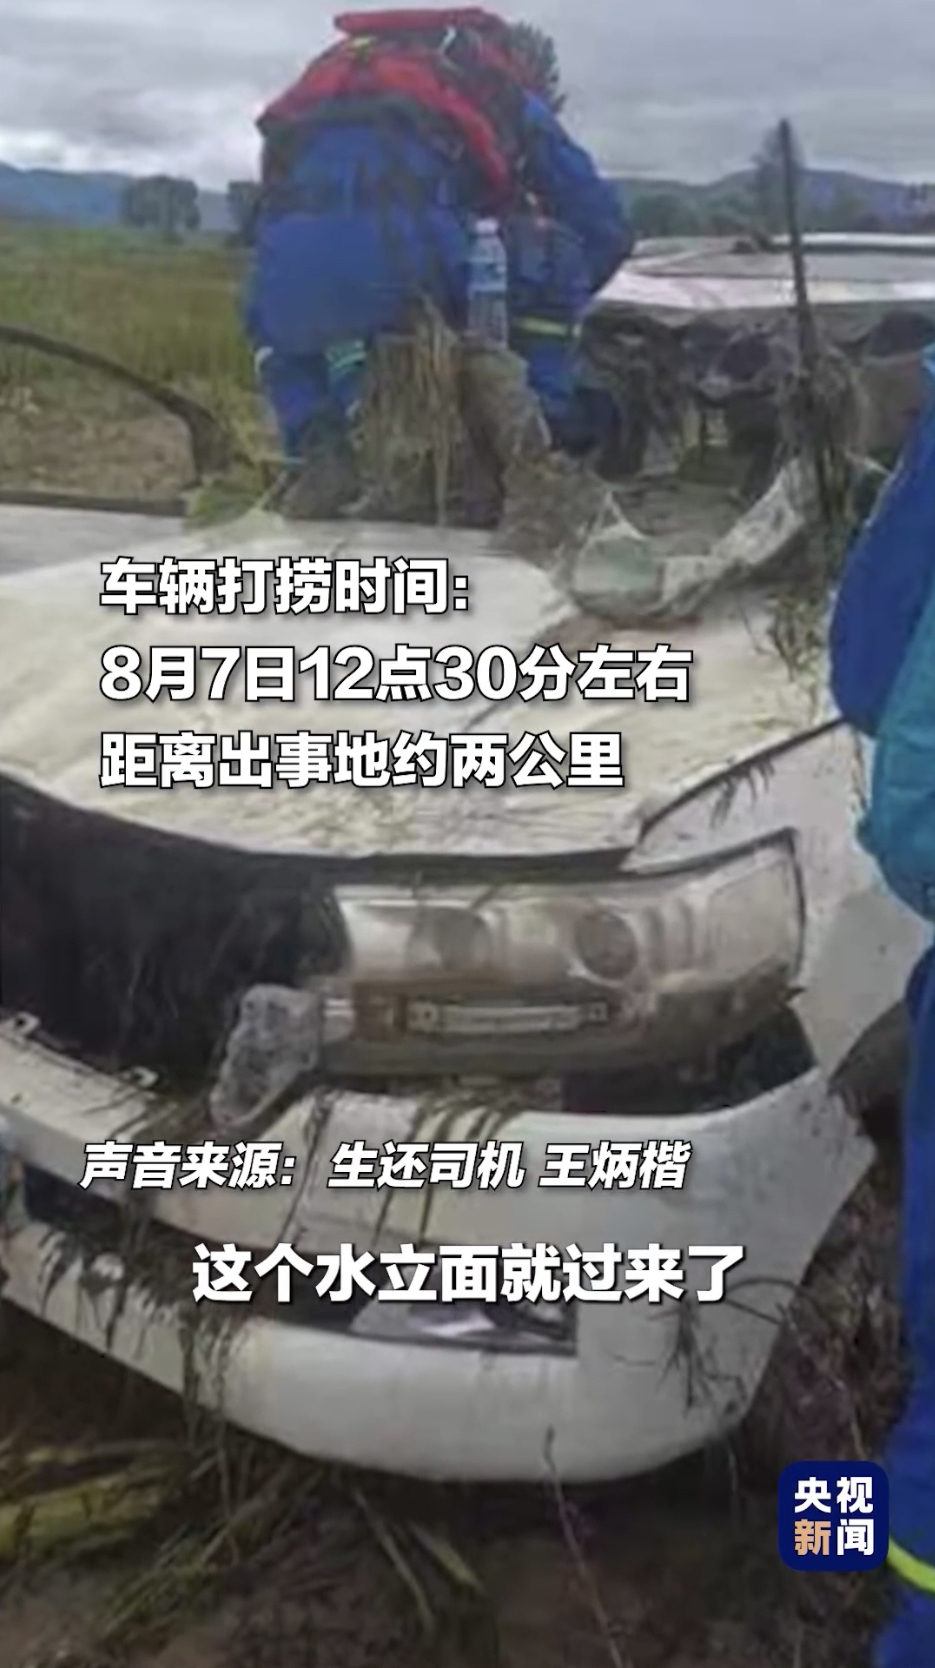 司机指骆旭东直到最后一刻都在关心撤离和人员伤亡情况。